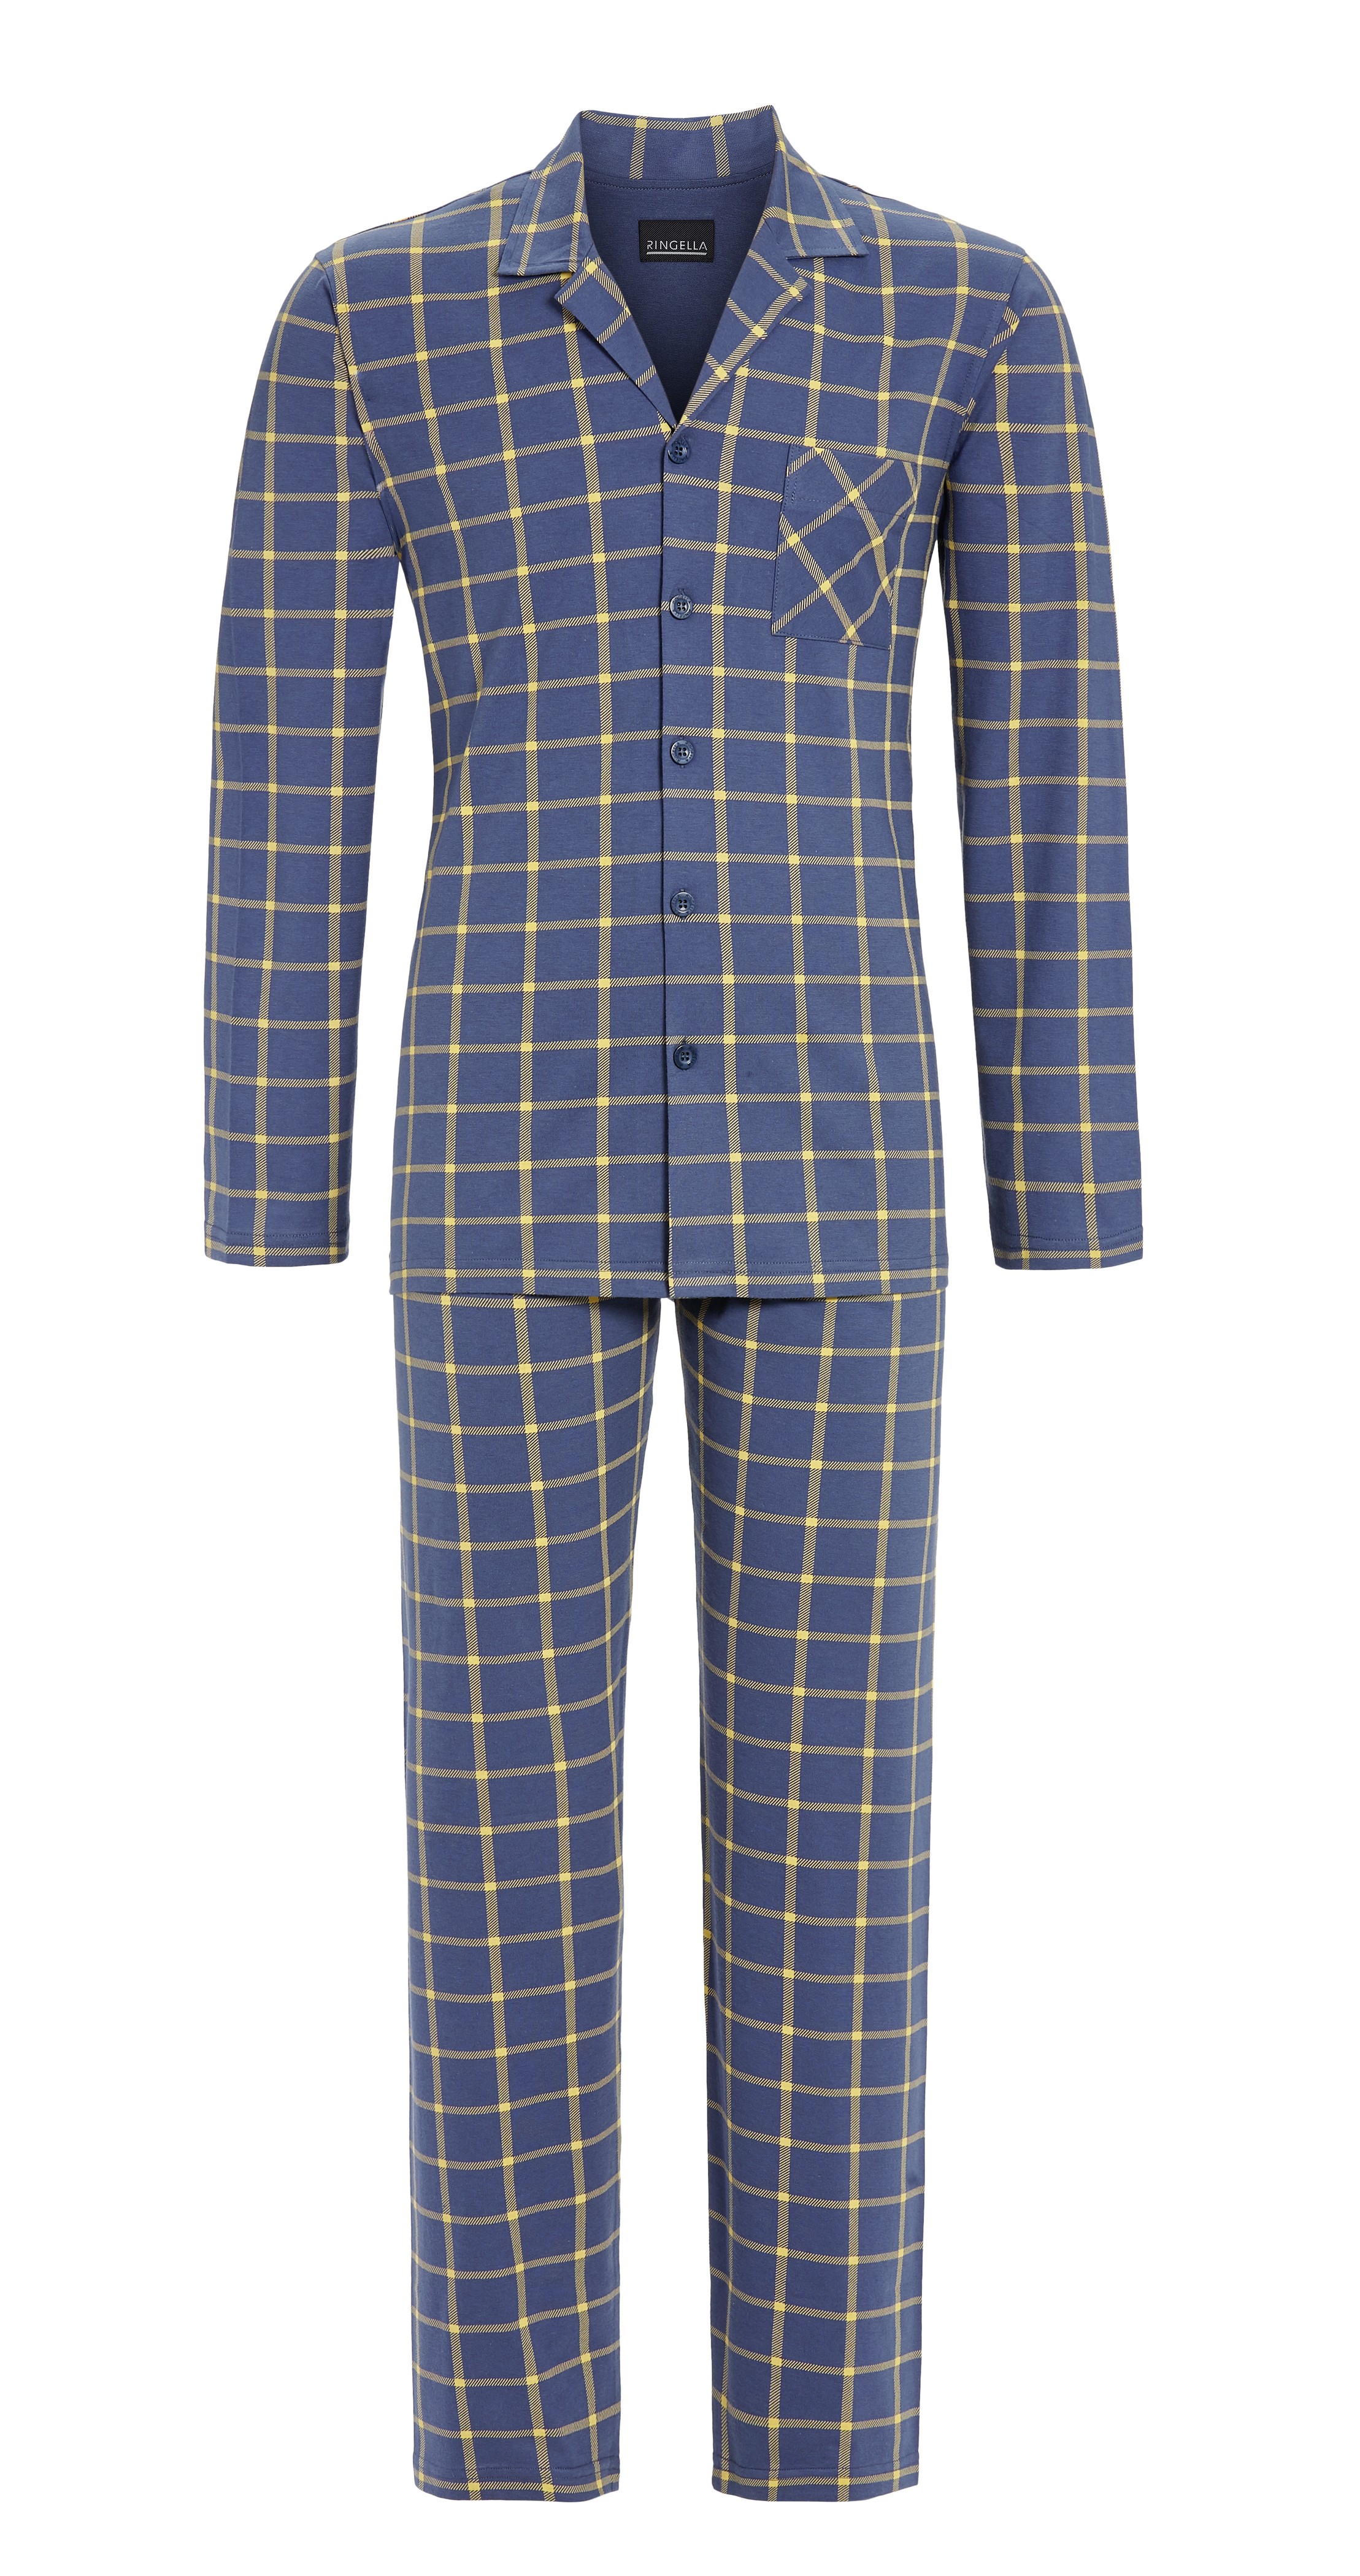 Pyjama mit durchgehender Knopfleiste | dark 3541215-242-56 56 | | denim